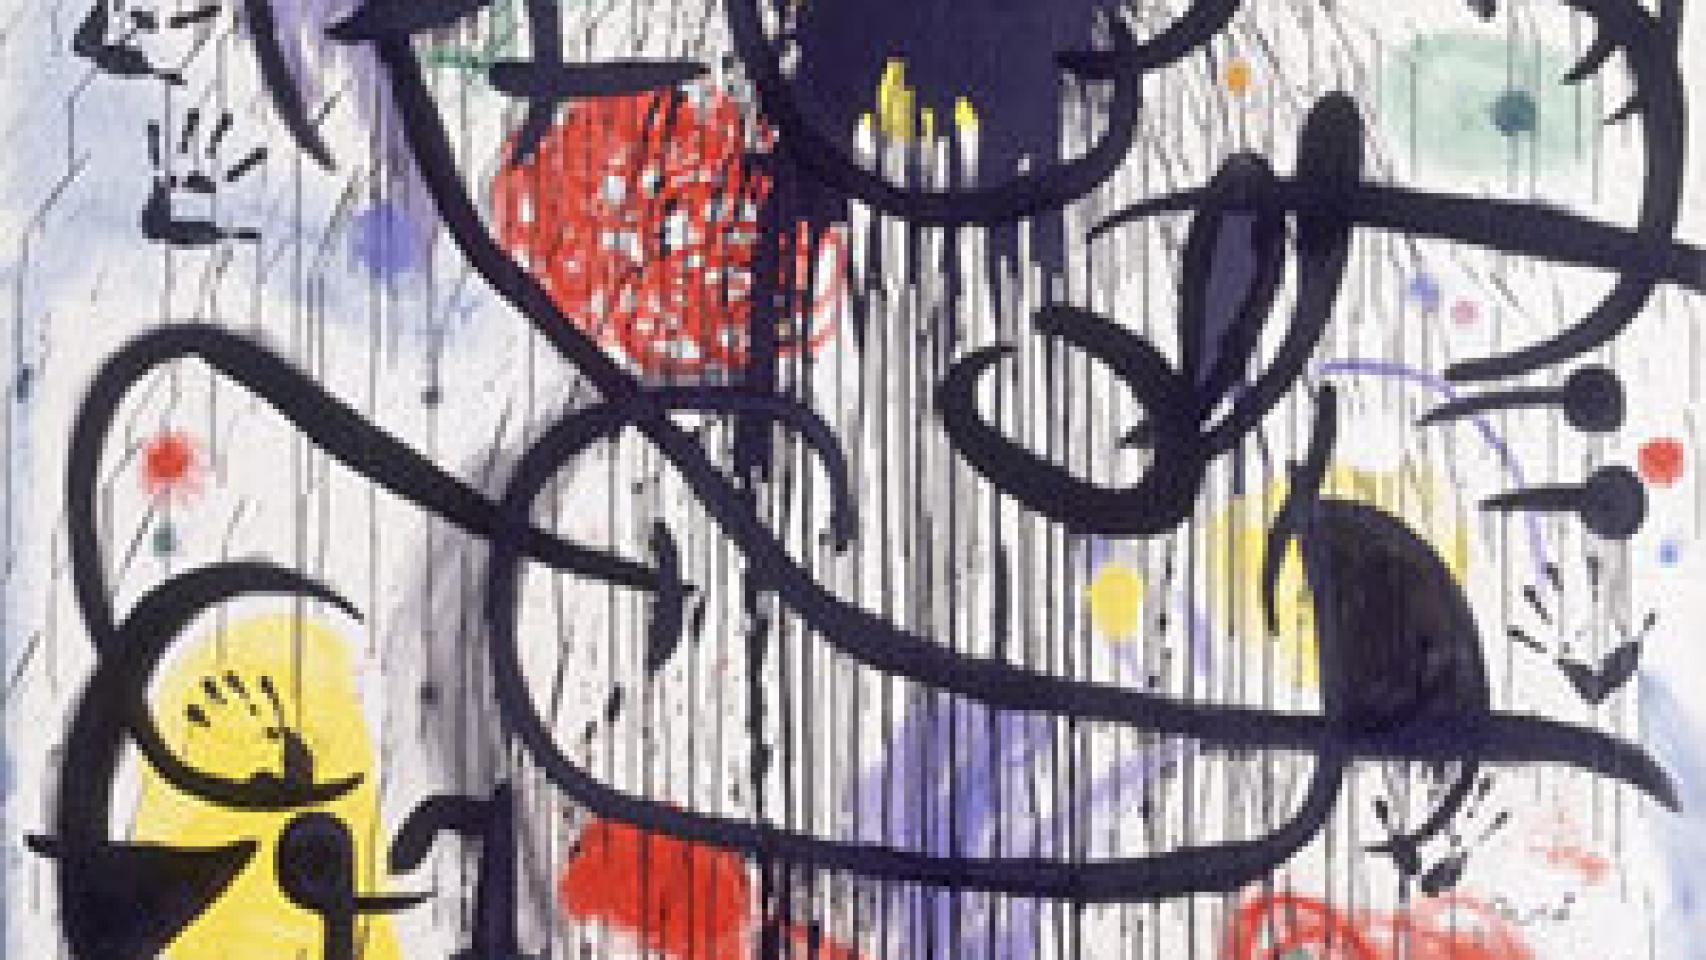 Image: Joan Miró, línea y color para servirles